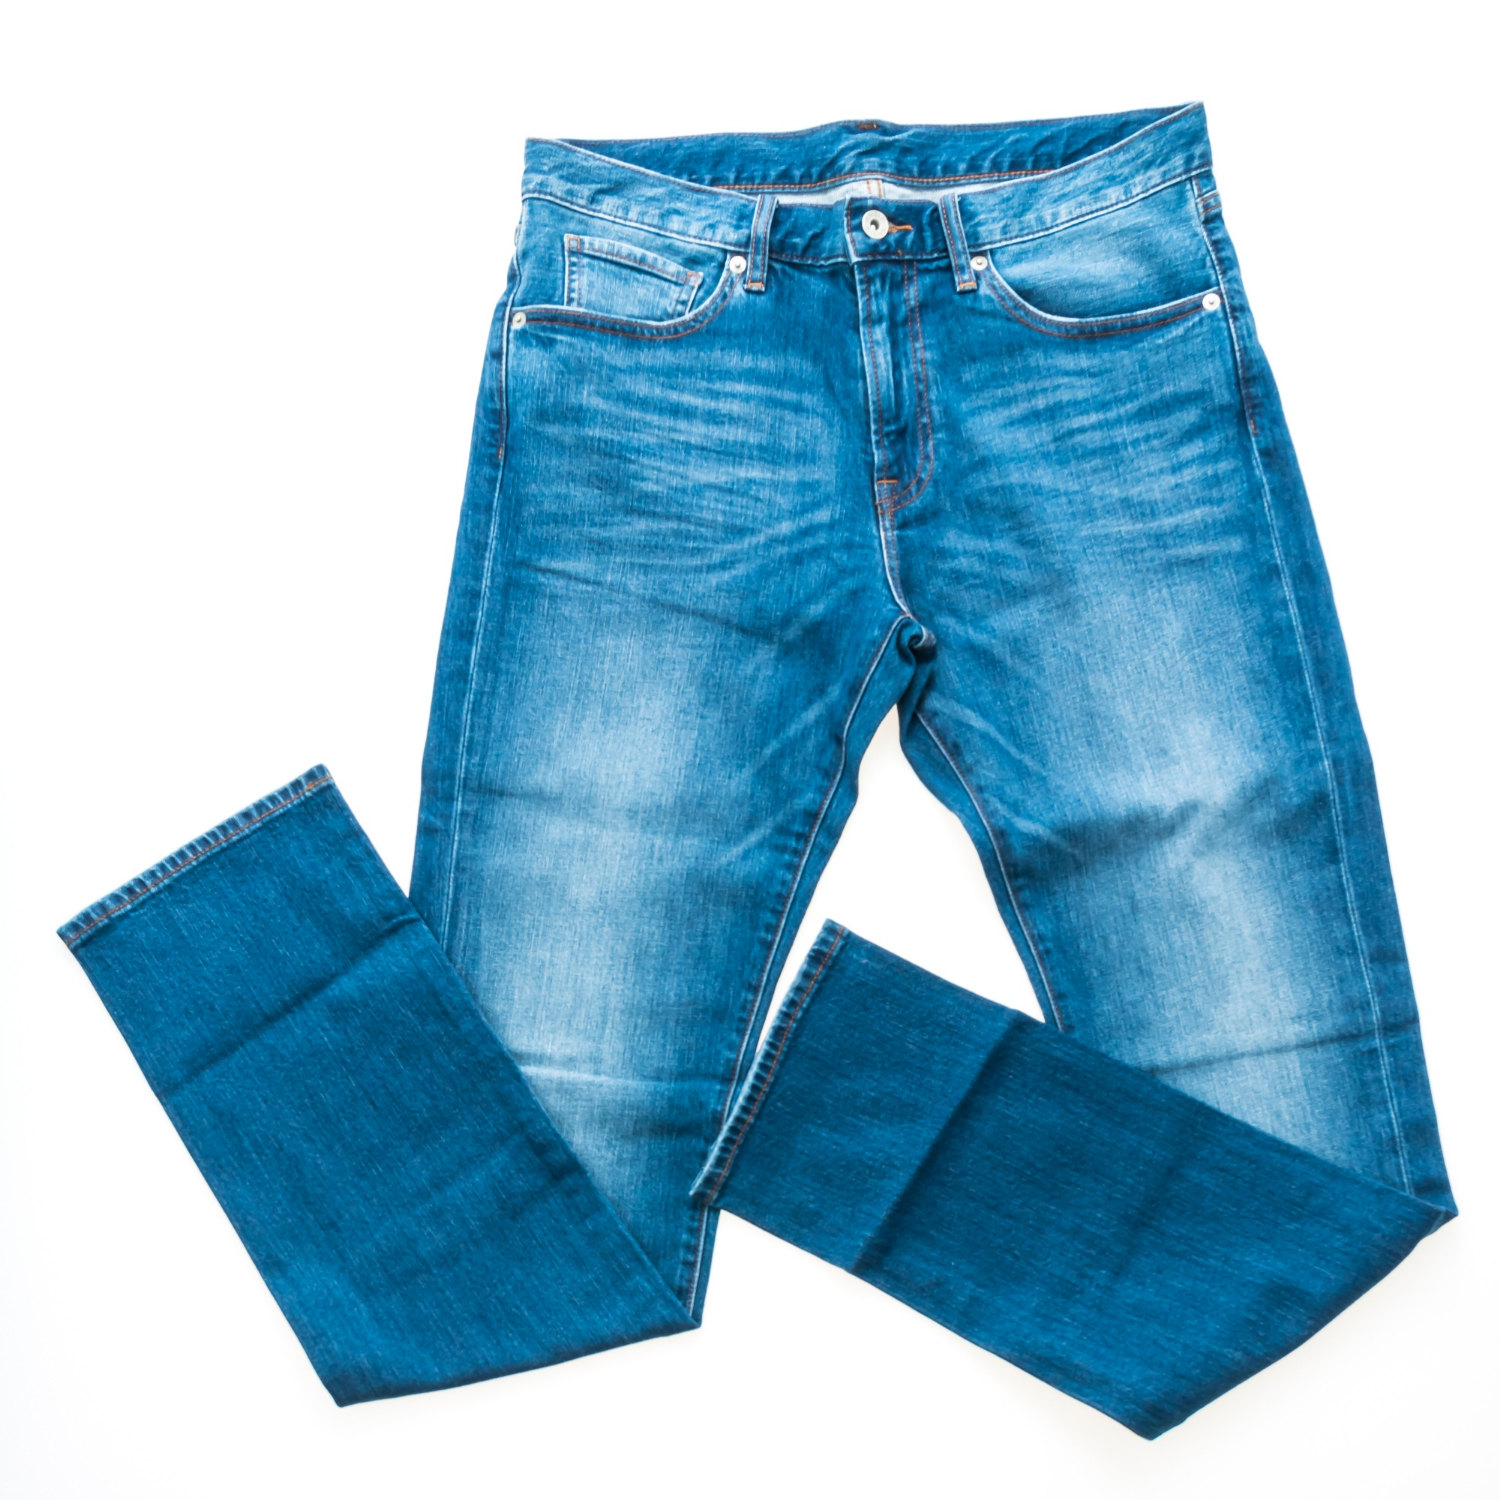 7 способов постирать джинсы, чтобы они сели по фигуре